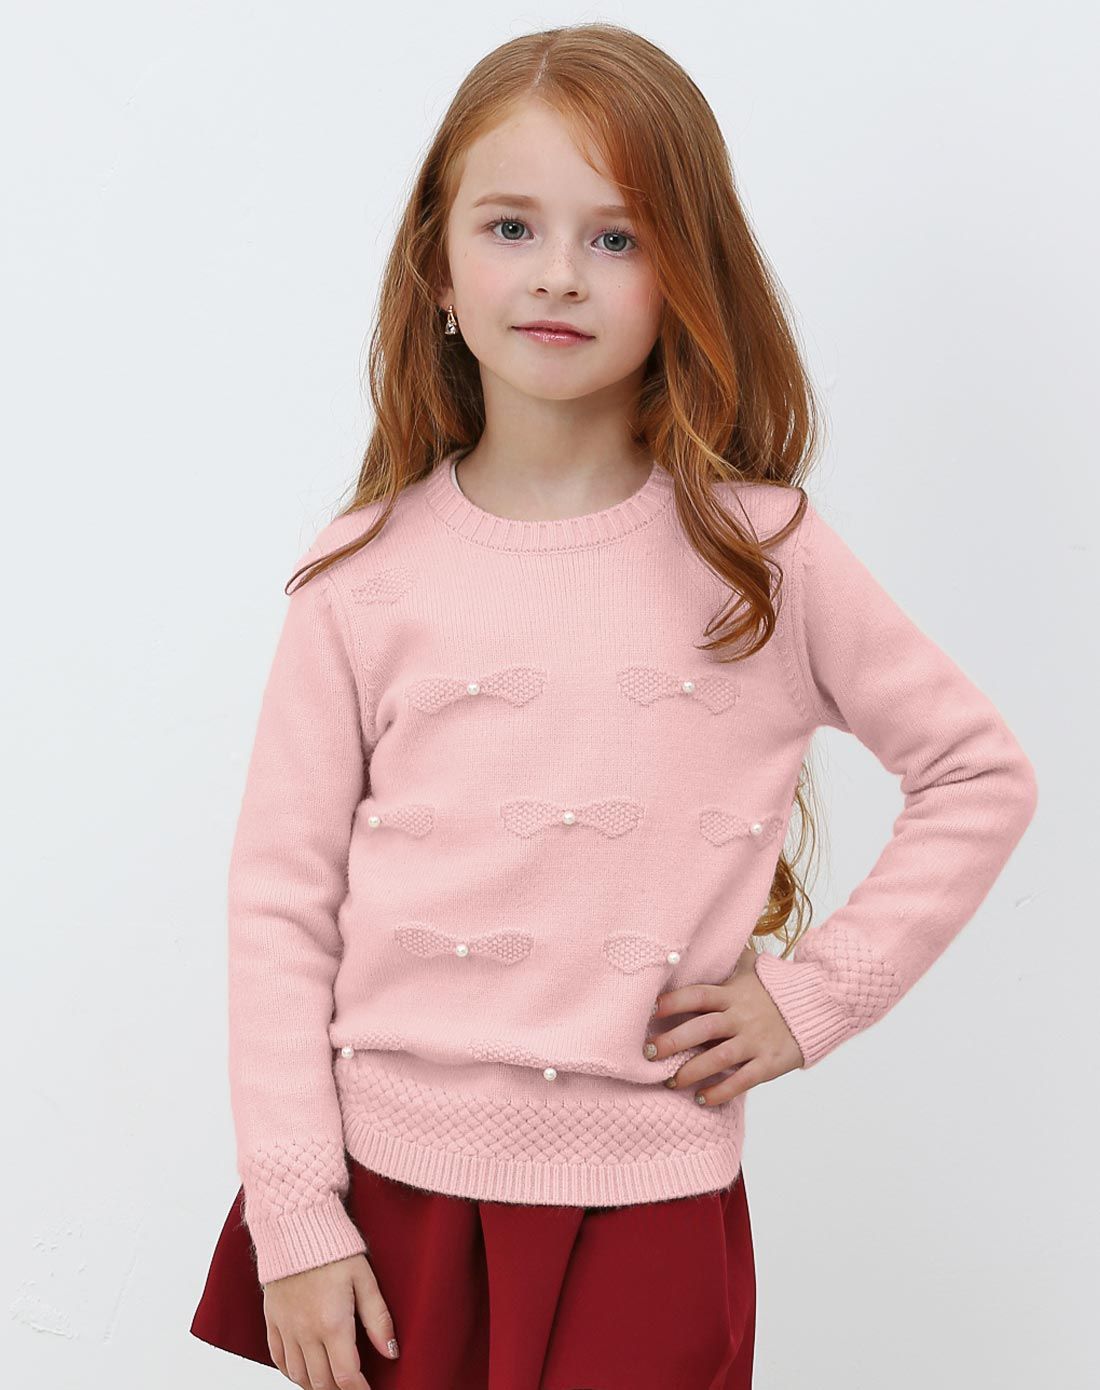 未来之星旗下品牌女童粉红珍珠圆领毛衣WG5